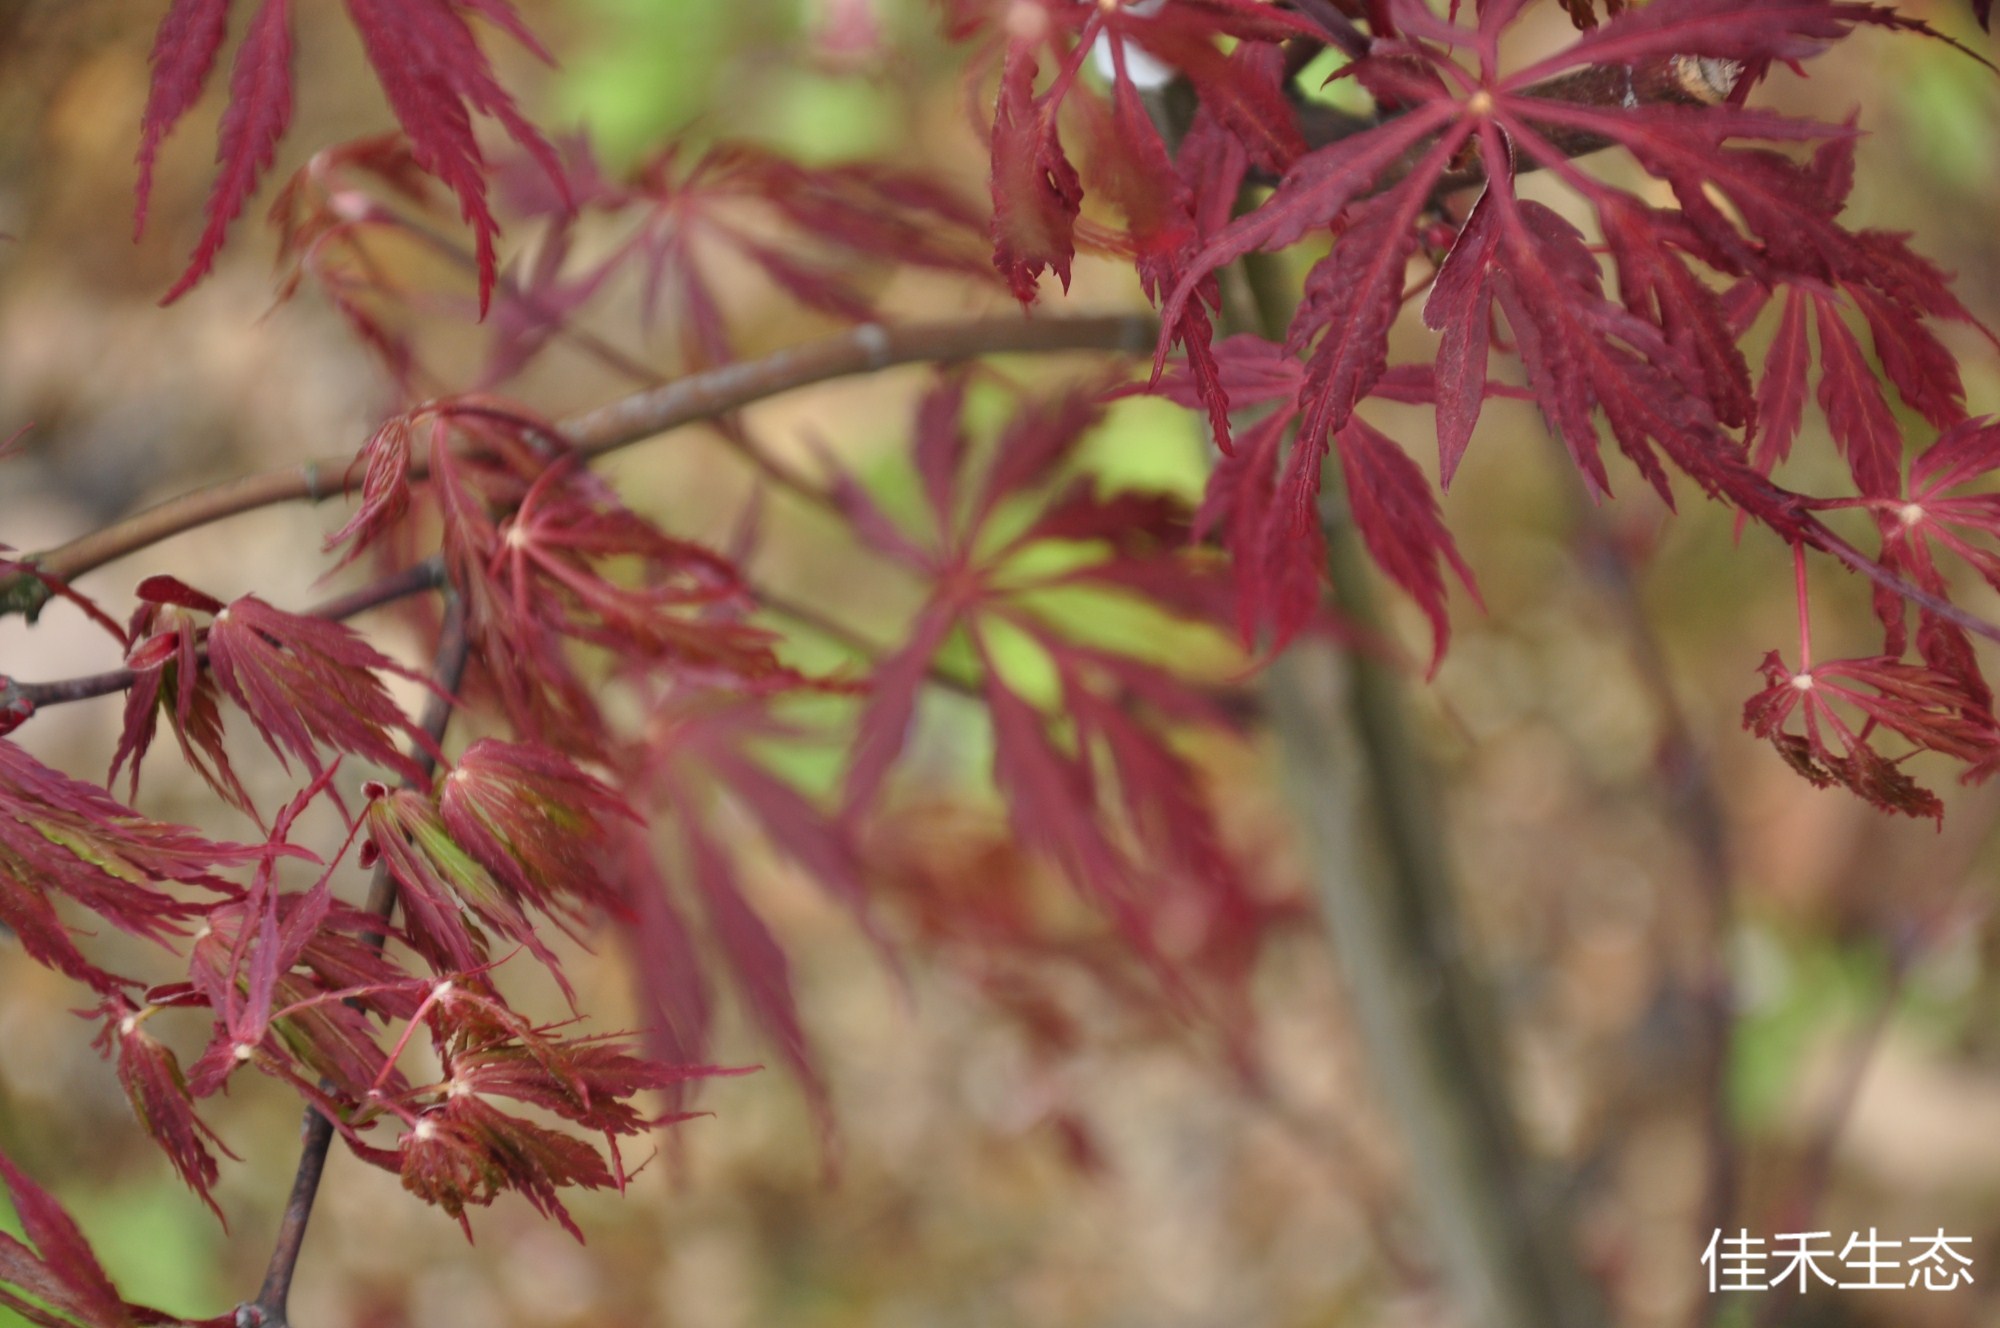 赤枝垂Acer matsumurae ‘Aka ｓhidare’